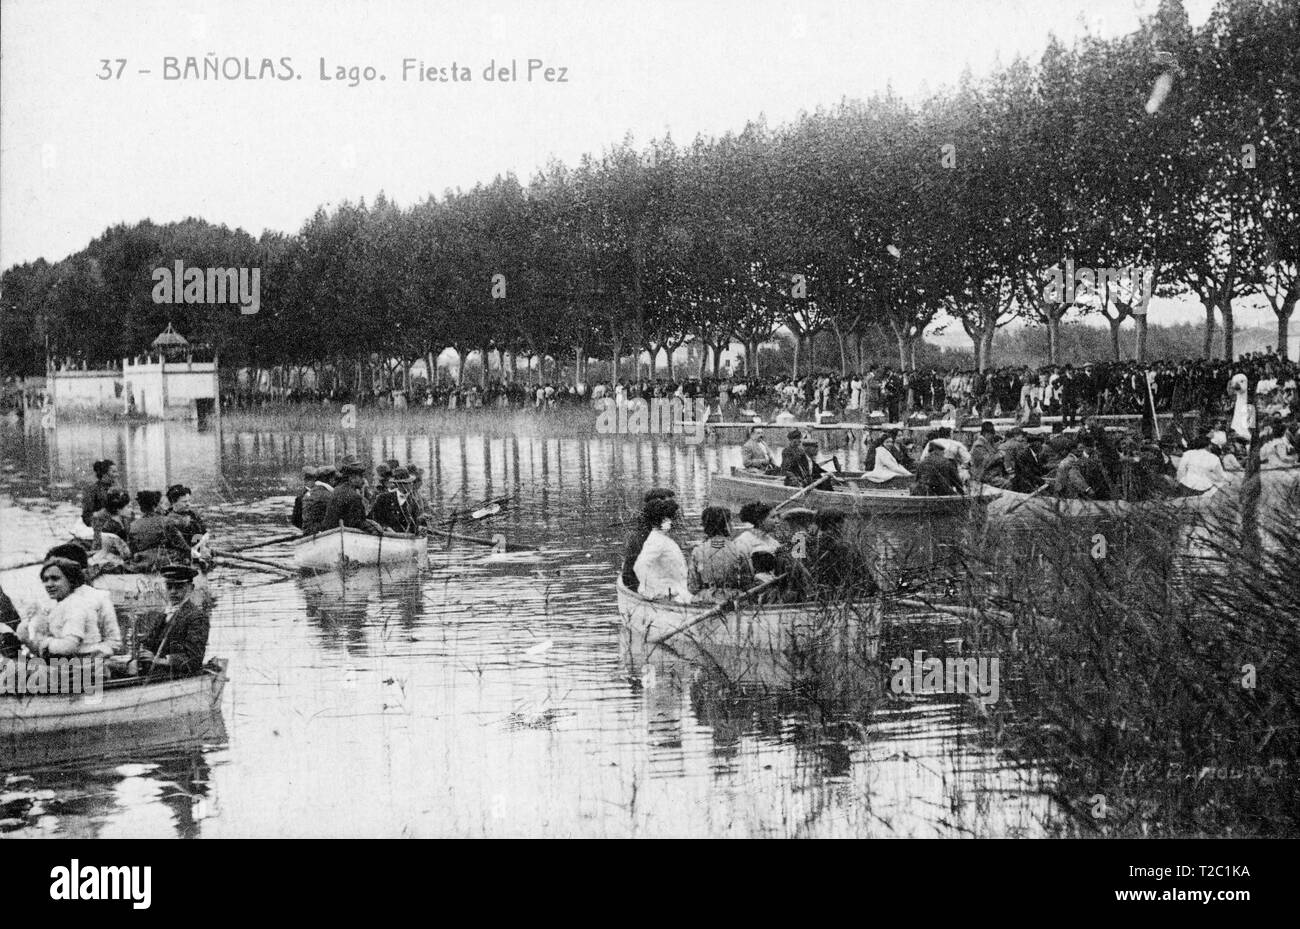 Tarjeta postal del lago de Banyoles. Celebracion de la Fiesta del pez, consistente en el lanzamiento de peces al agua con el objetivo de repoblar las aguas del estanque. Año 1915. Stock Photo